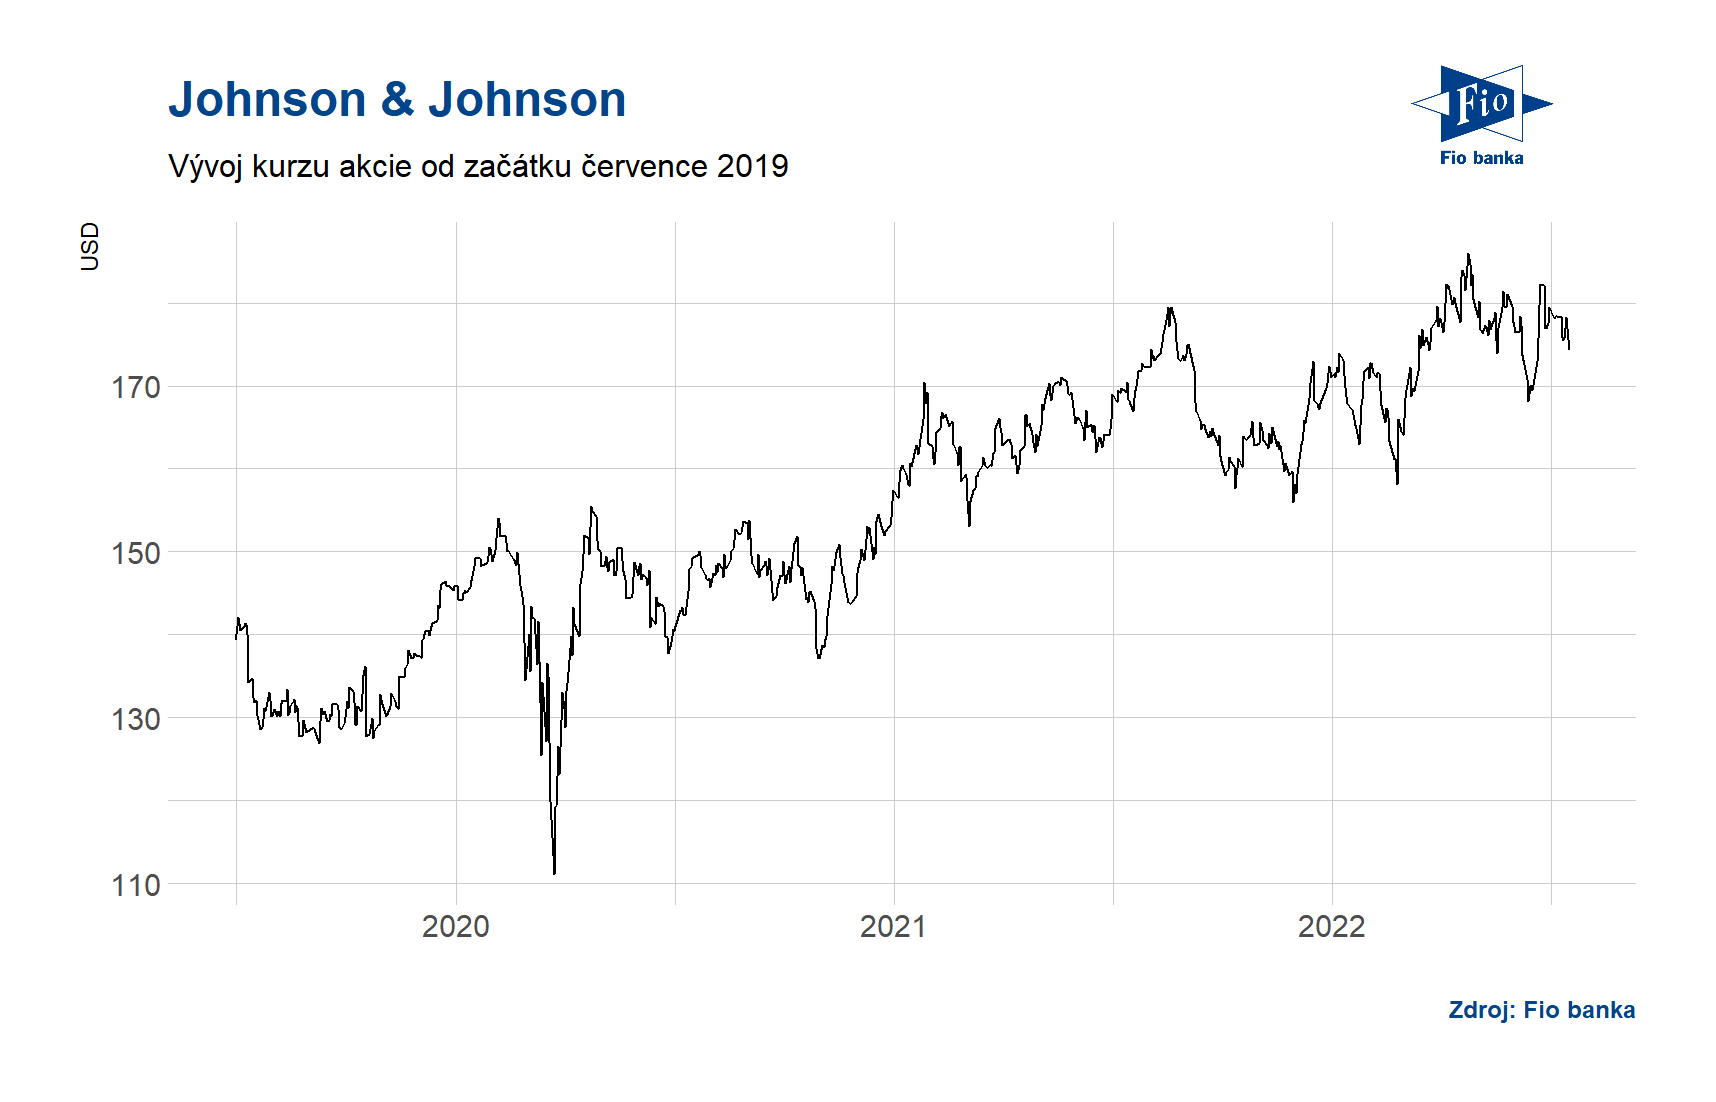 Vývoj ceny akcií společnosti Johnson & Johnson